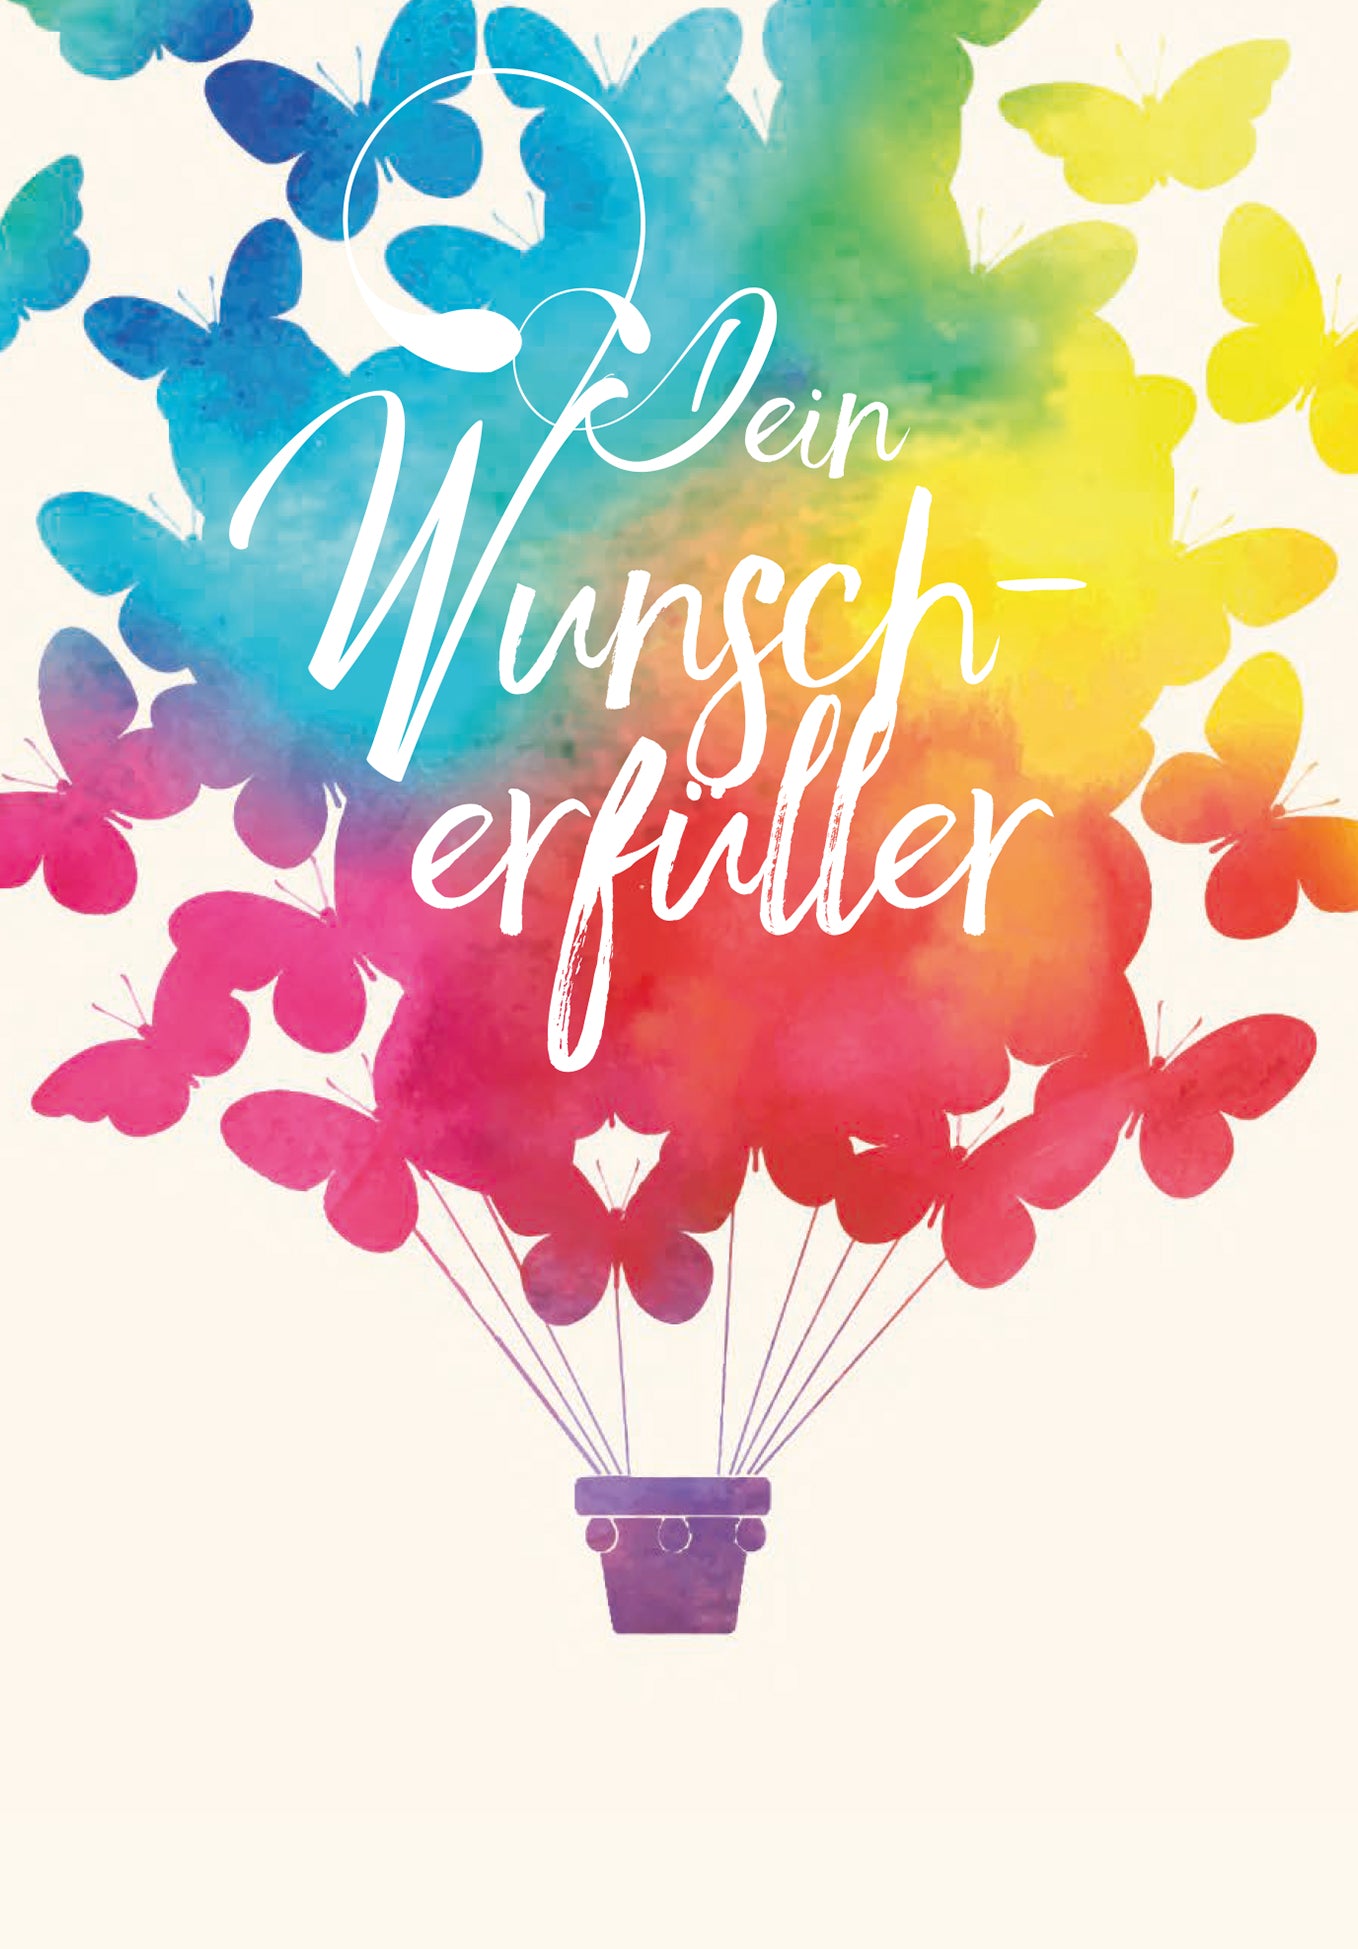 Dein Wunscherfüller - Schmetterling (Optional: Mit Logo für zzgl. 2 €)